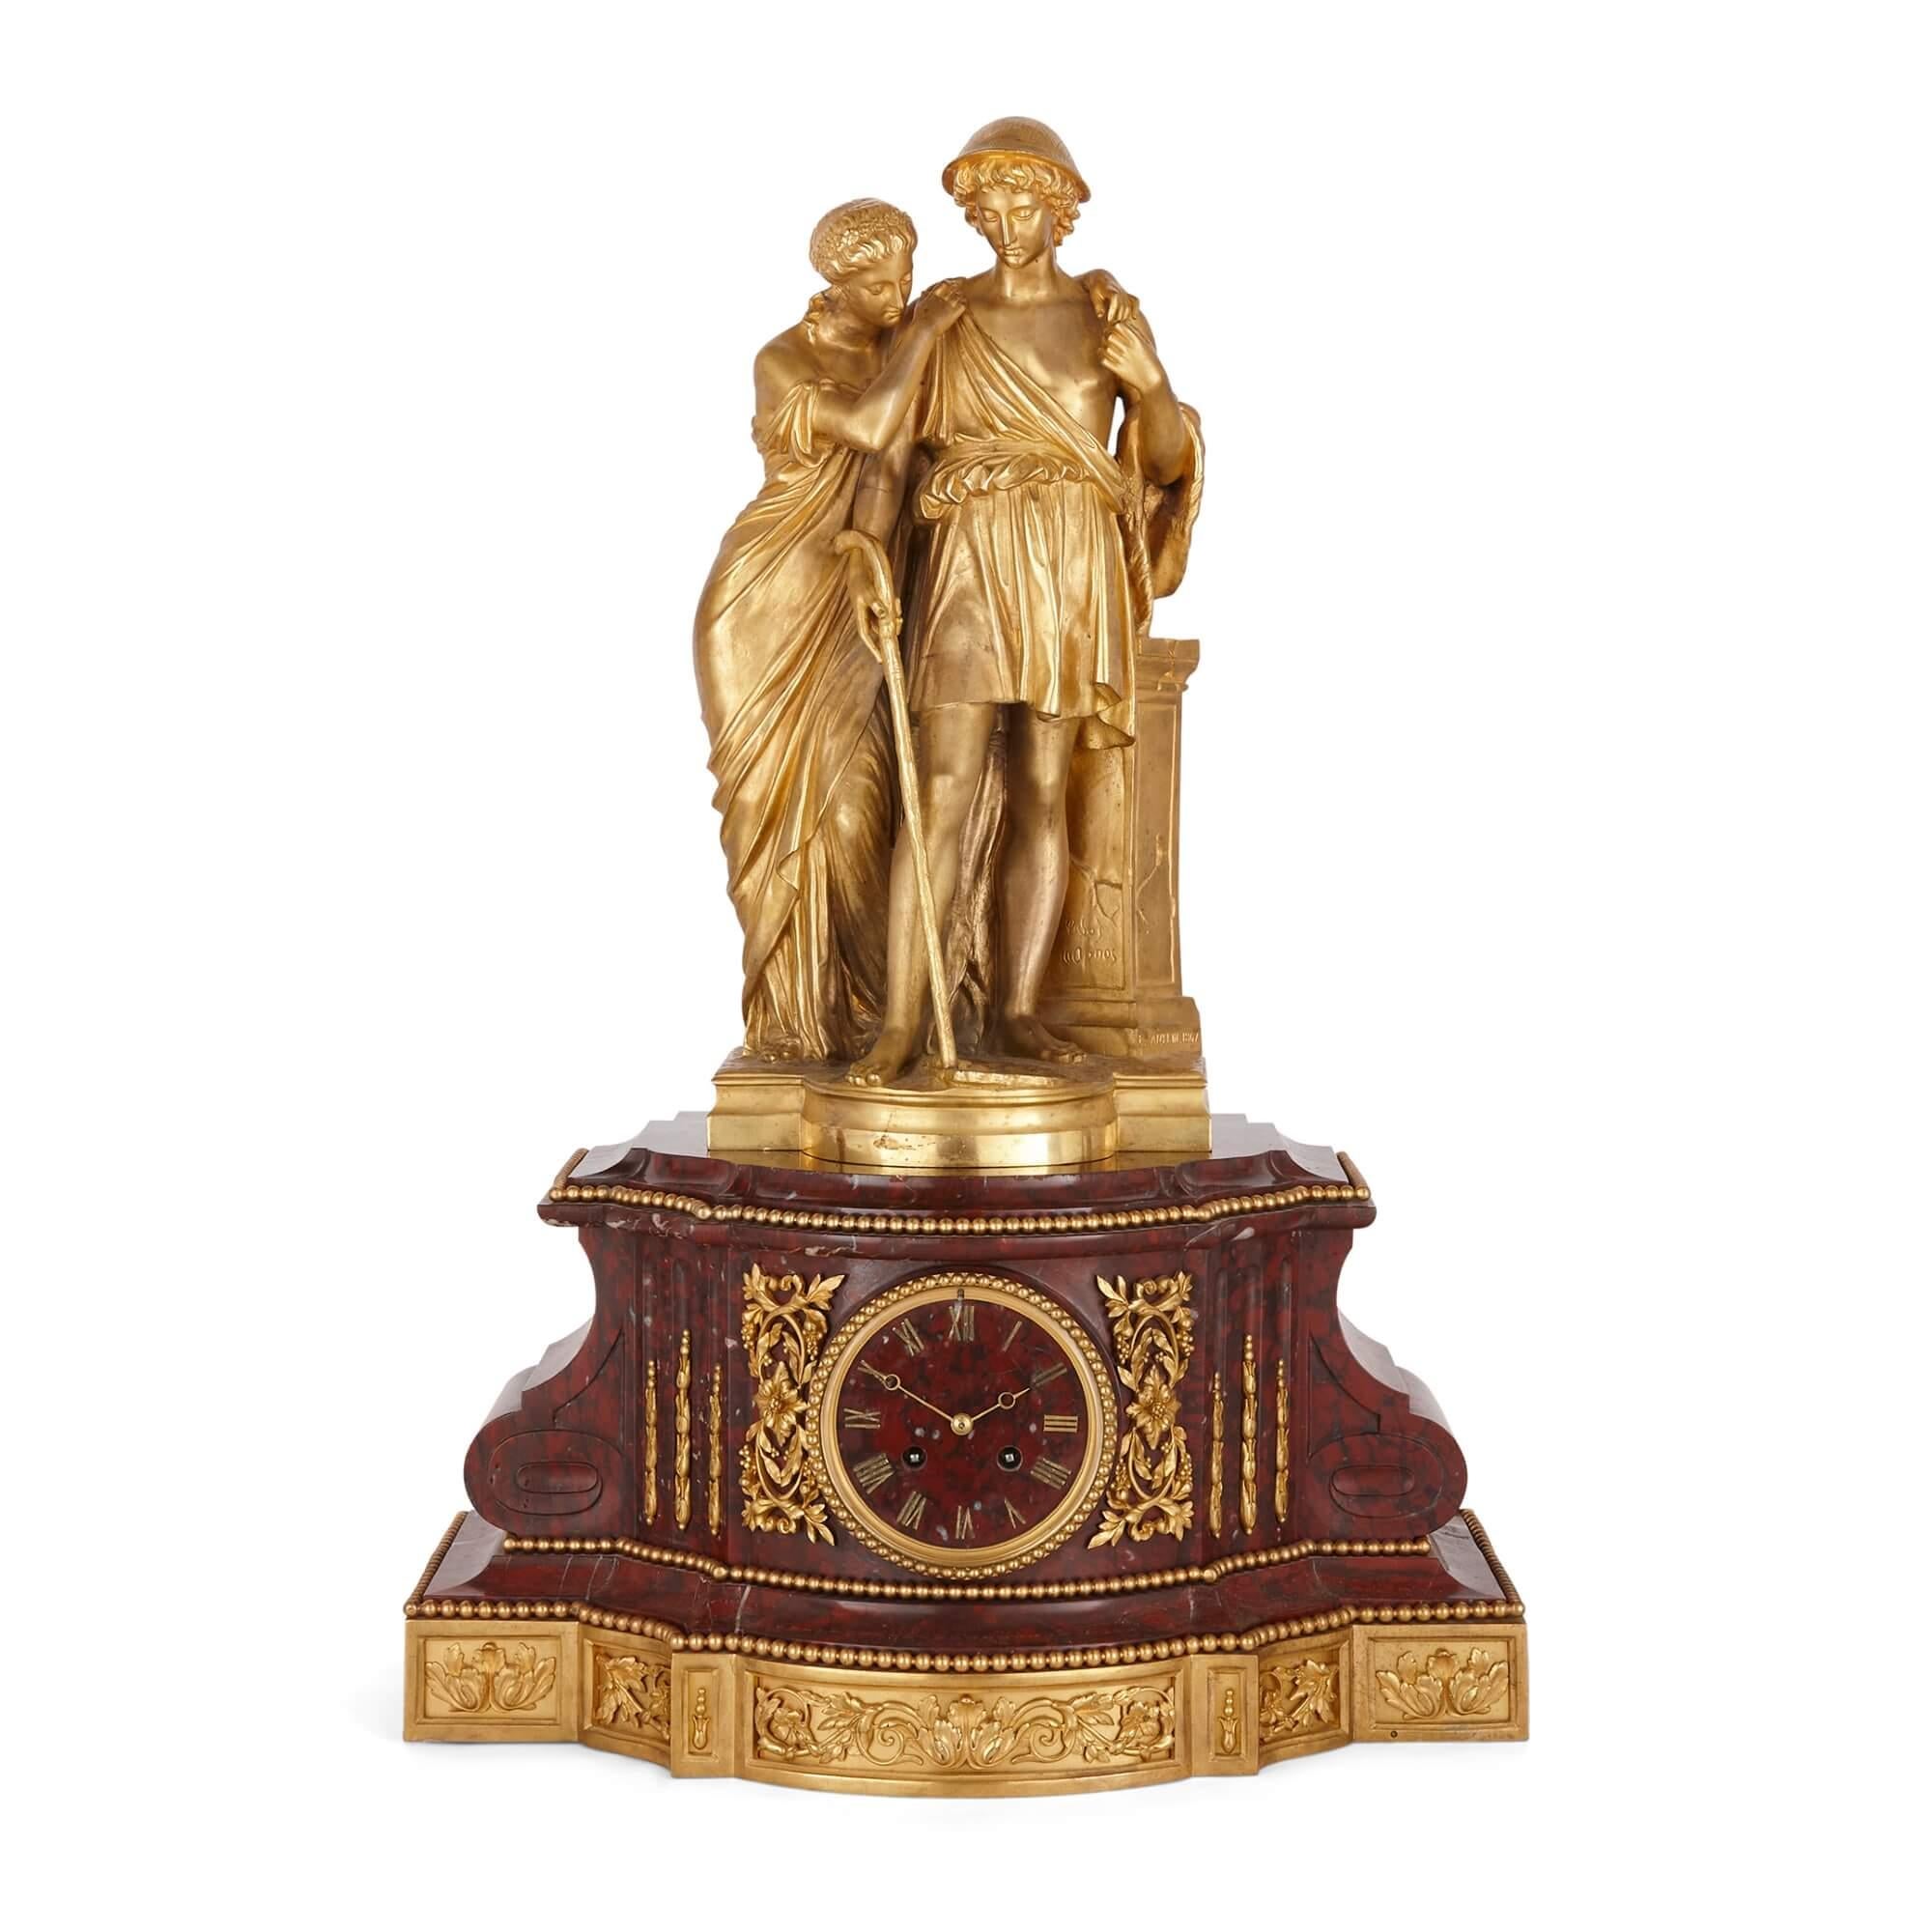 Pendule de style Louis XVI en bronze doré et marbre rouge griotte
Français, 1867
Horloge : hauteur 67cm, largeur 46cm, profondeur 28cm
Chandelier : hauteur 81cm, largeur 34cm, profondeur 34cm

Comprenant une paire de candélabres à six lumières